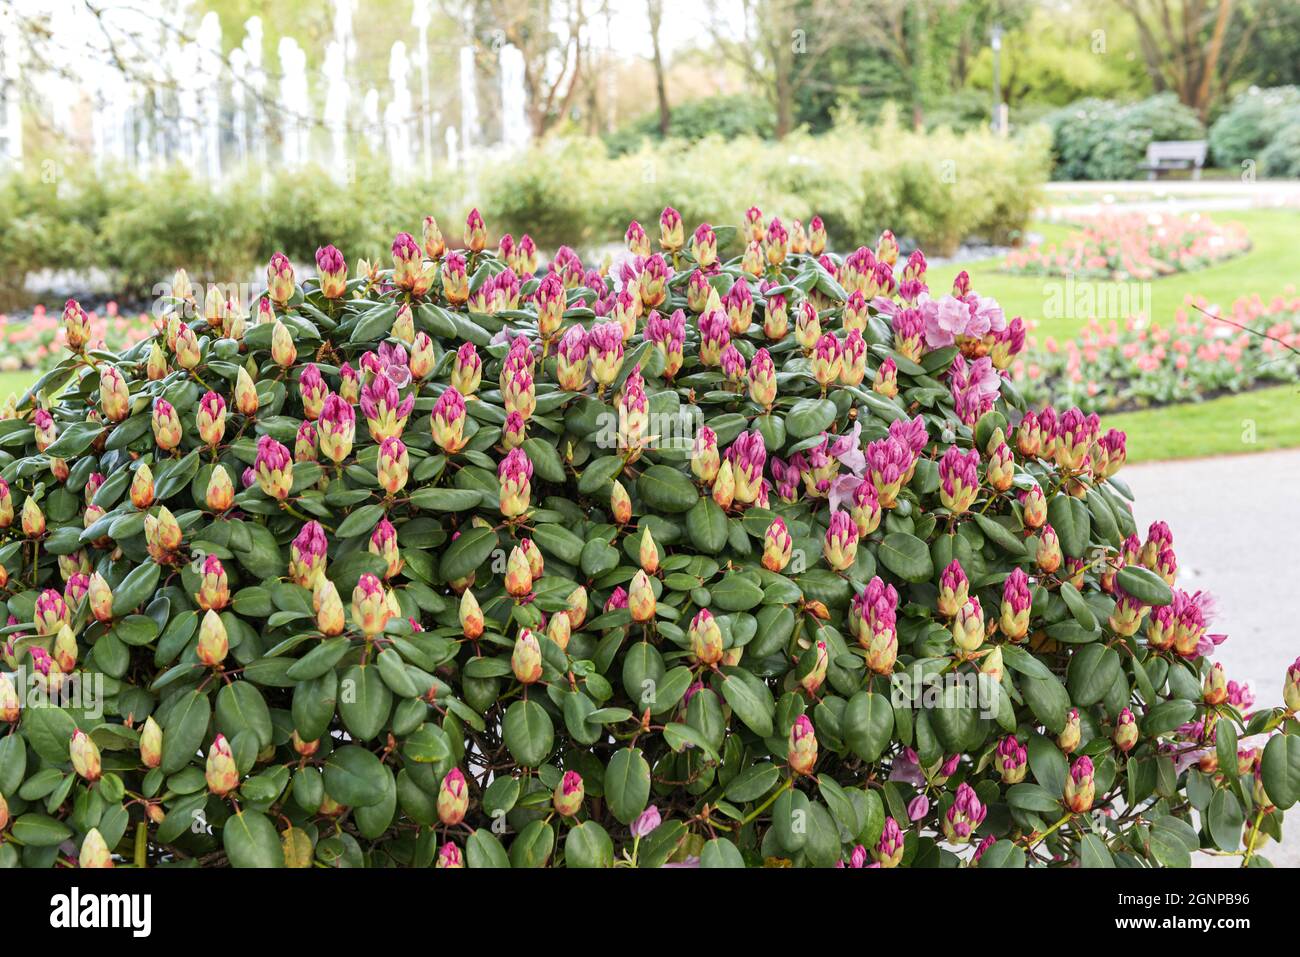 rhododendron (Rhododendron 'Vater Boehlje', Rhododendron Vater Boehlje), blooming, cultivar, cultvar Vater Boehlje, Germany Stock Photo